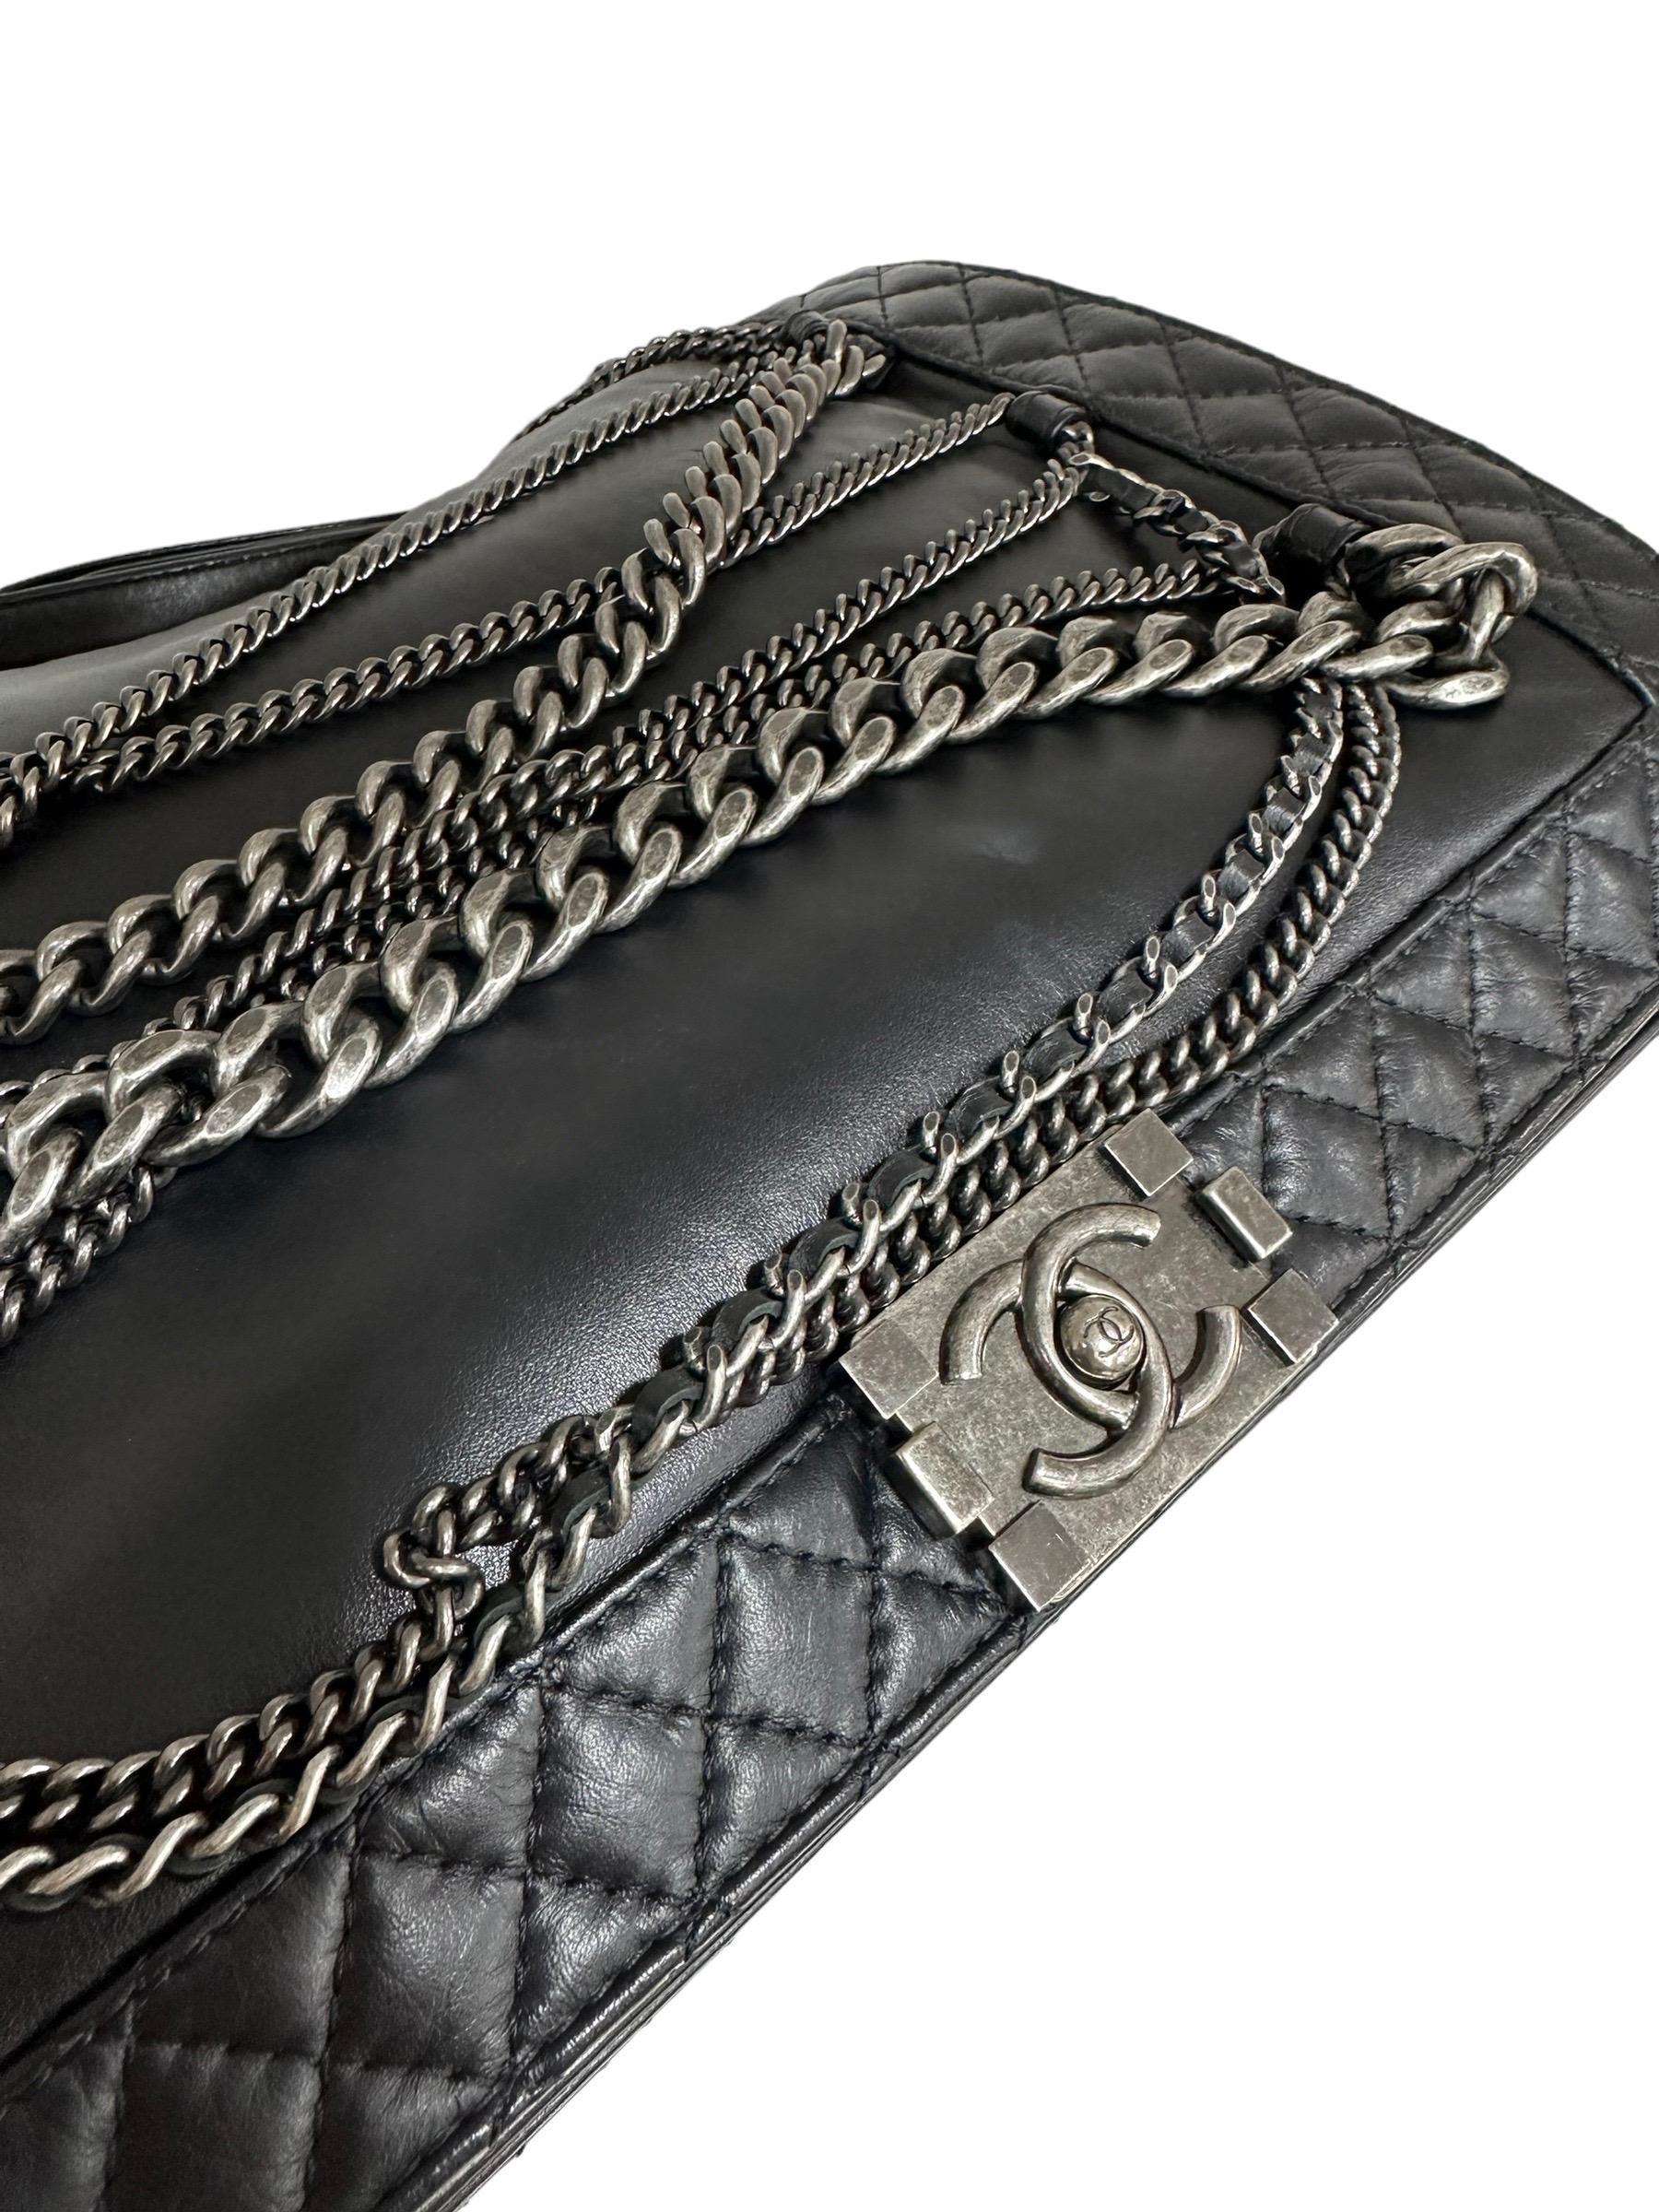 2014 Chanel Boy XL Limited Edition Shoulder Bag Multi Chains 2